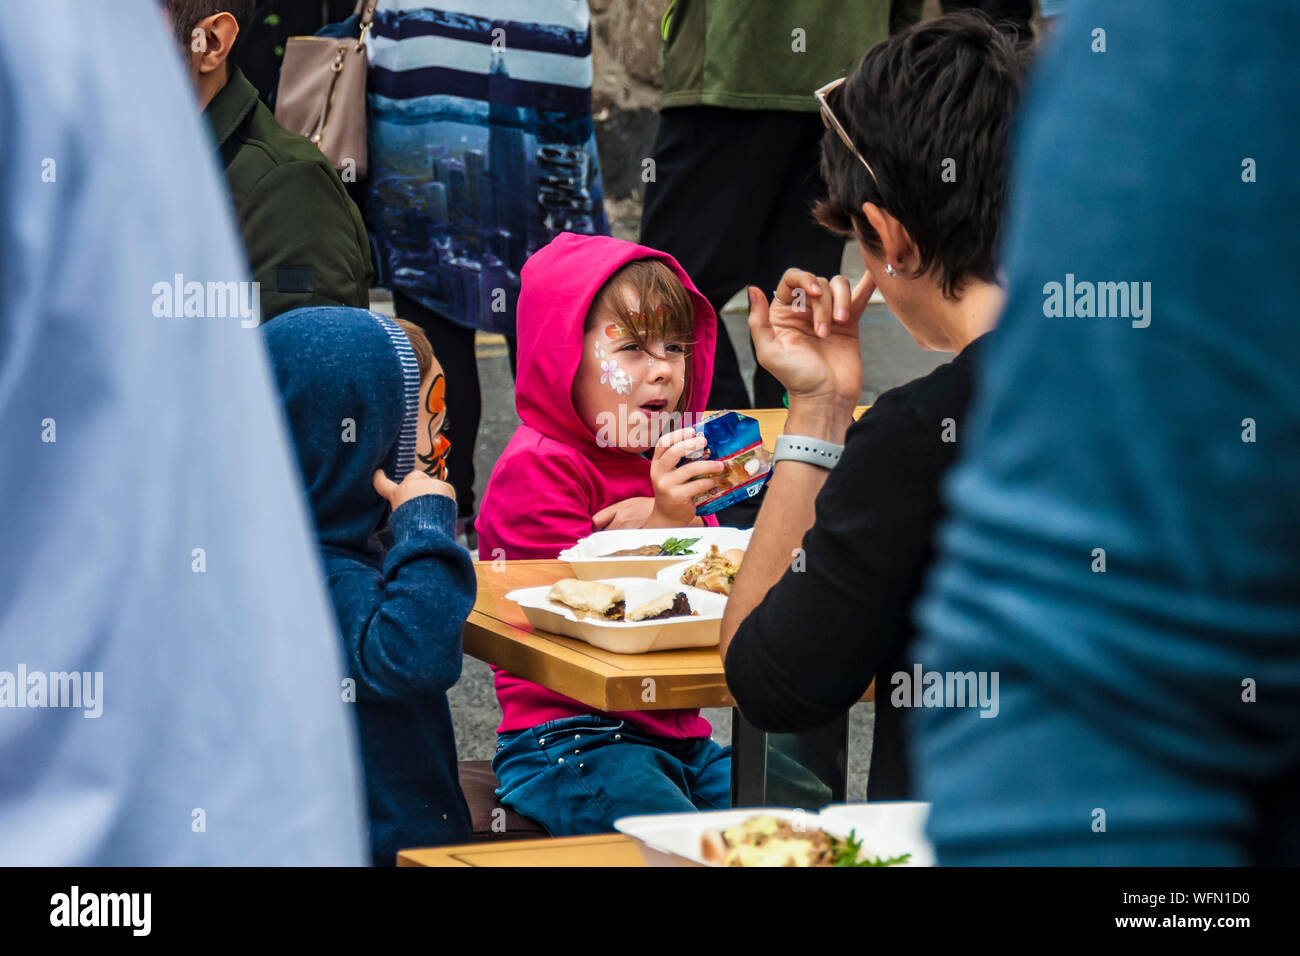 Familie mit Kindern essen auf der Straße Tabelle in Menge. Dalkey, Dublin, Irland, 25. August 2019. Meeresfrüchte "dalkey Lobster Festival" Stockfoto